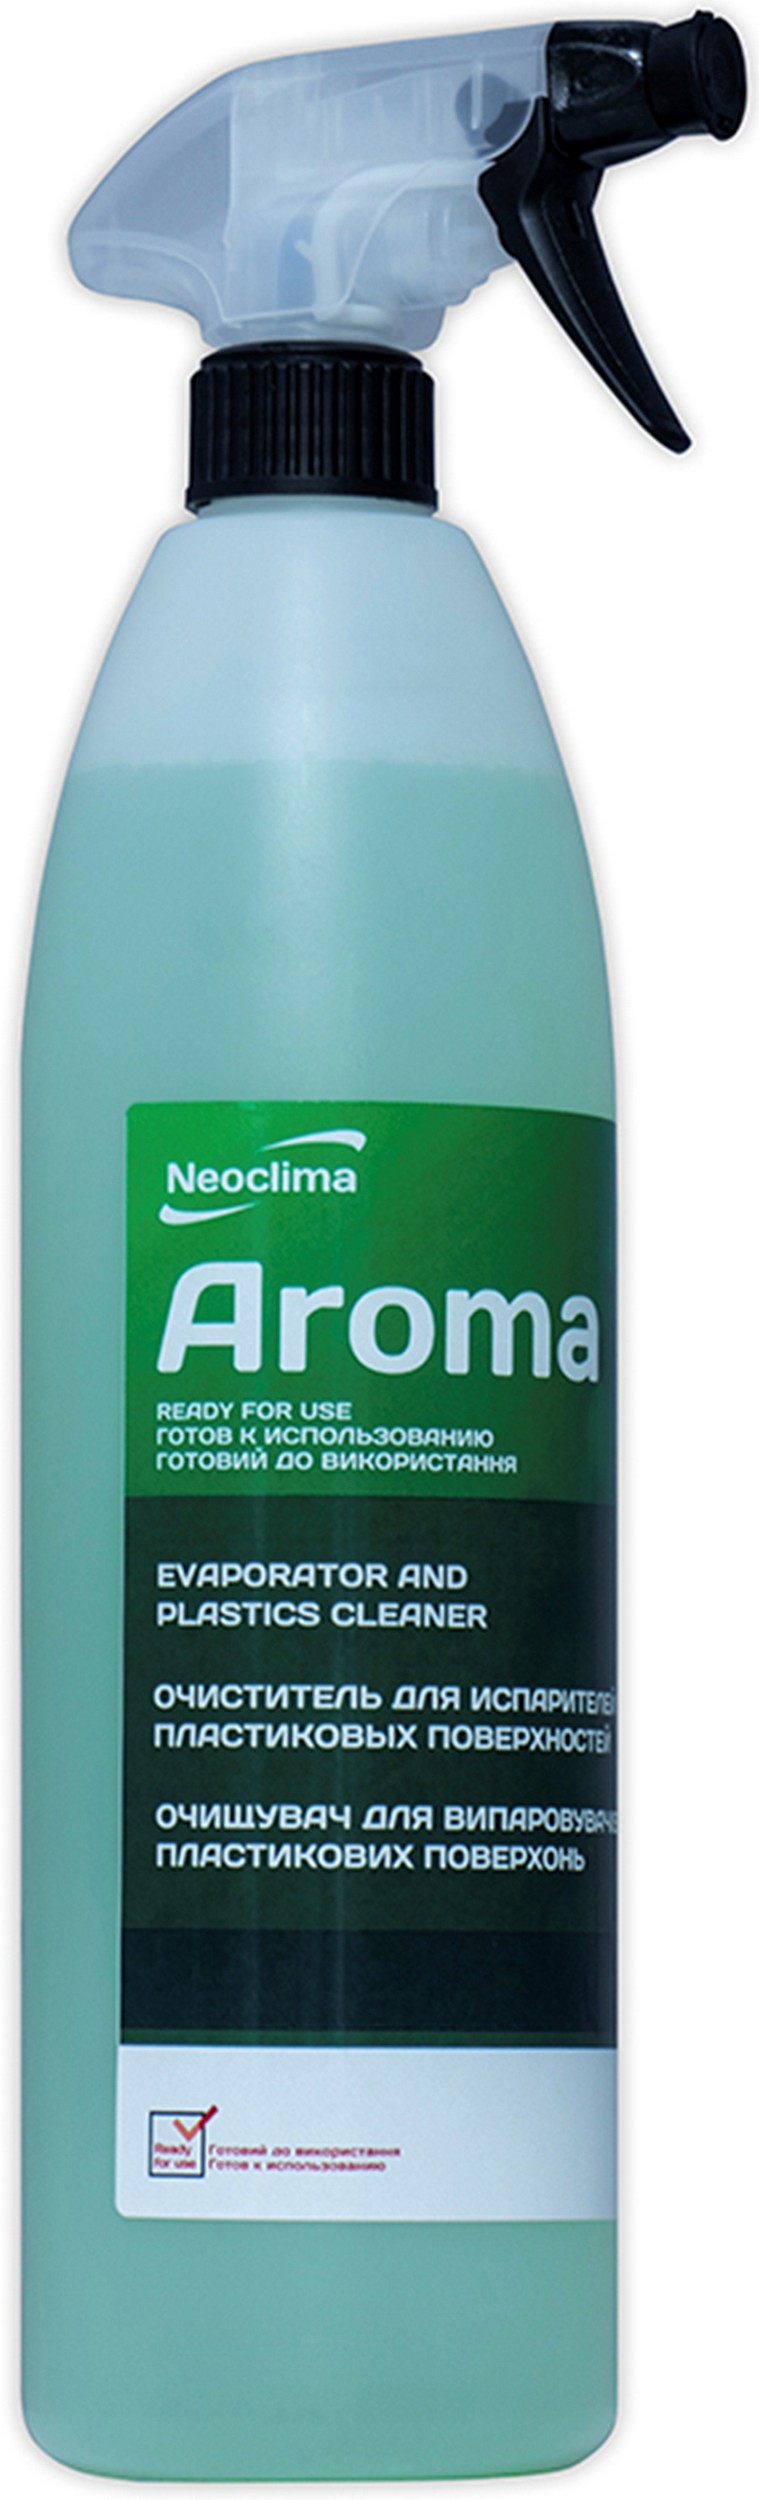 Отзывы очититель внутреннего блока Neoclima Aroma 1 л, спрей